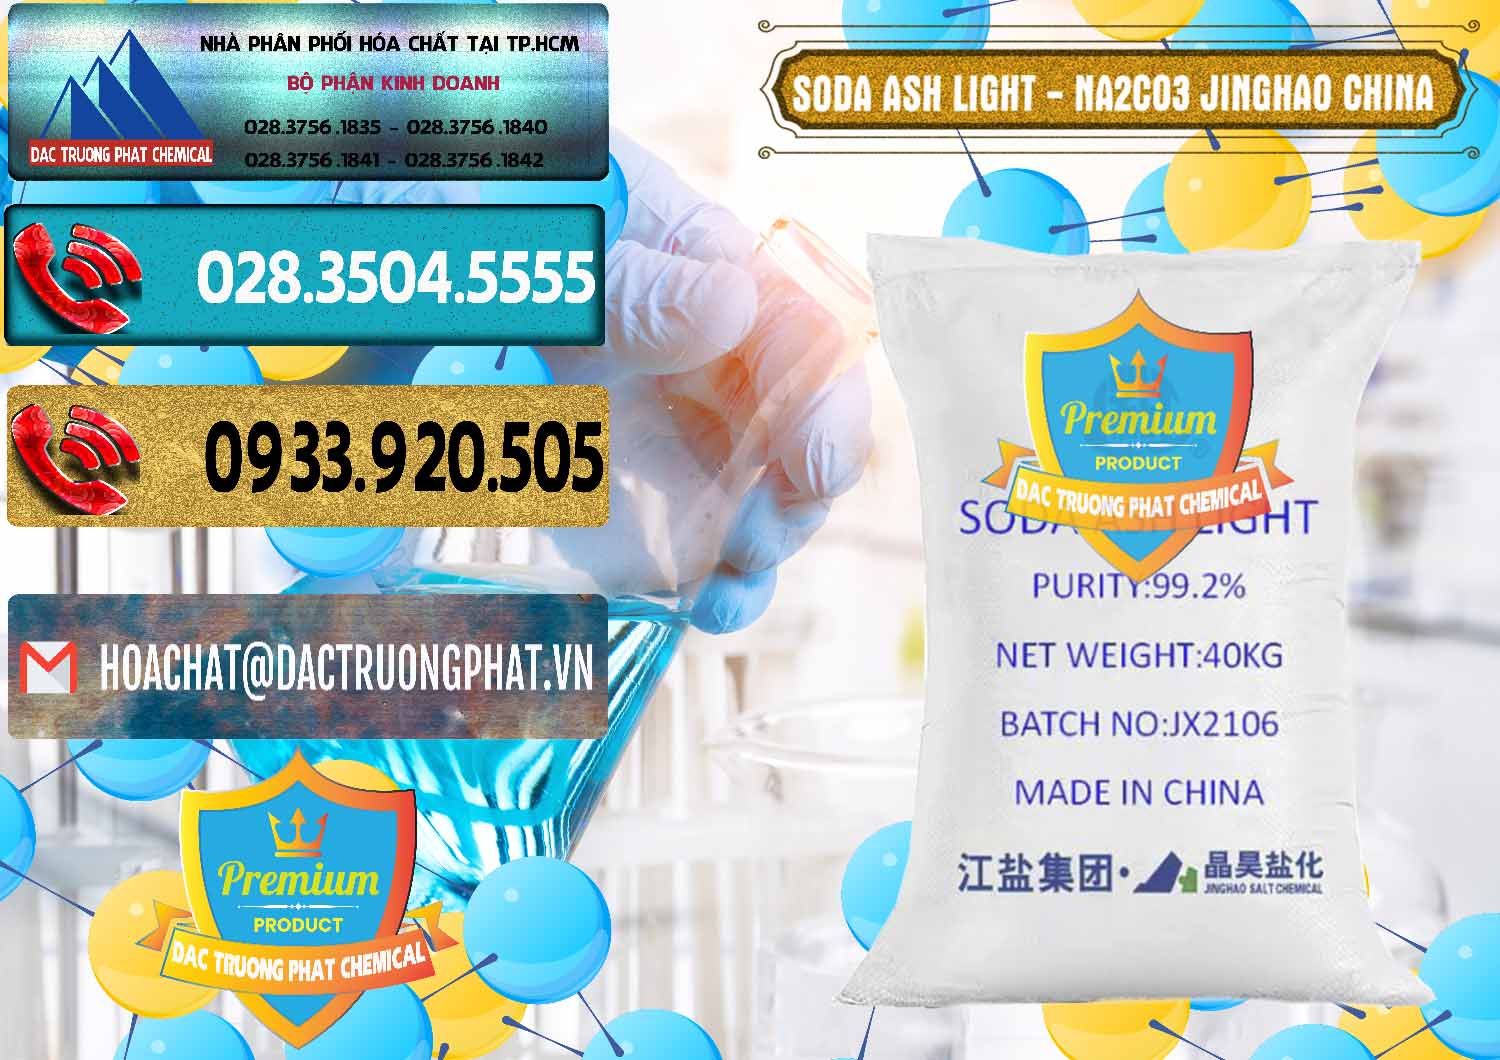 Cty cung cấp _ bán Soda Ash Light - NA2CO3 Jinghao Trung Quốc China - 0339 - Nhà cung cấp - bán hóa chất tại TP.HCM - hoachatdetnhuom.com